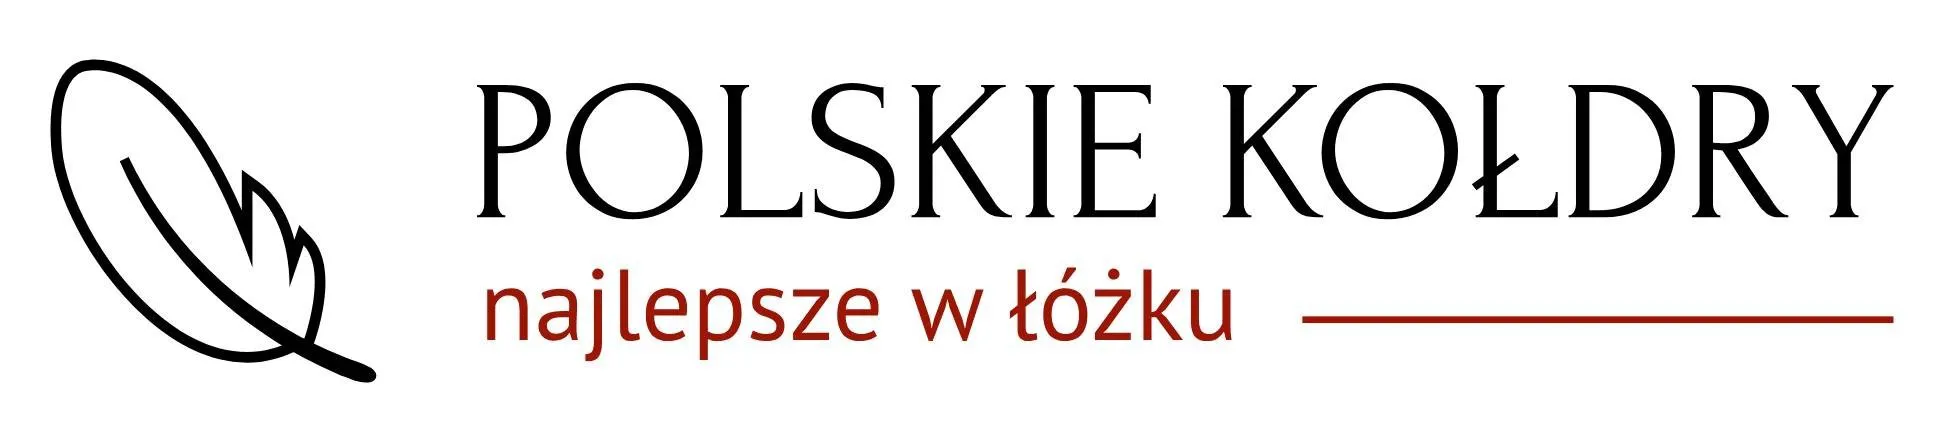 polskiekoldry.pl